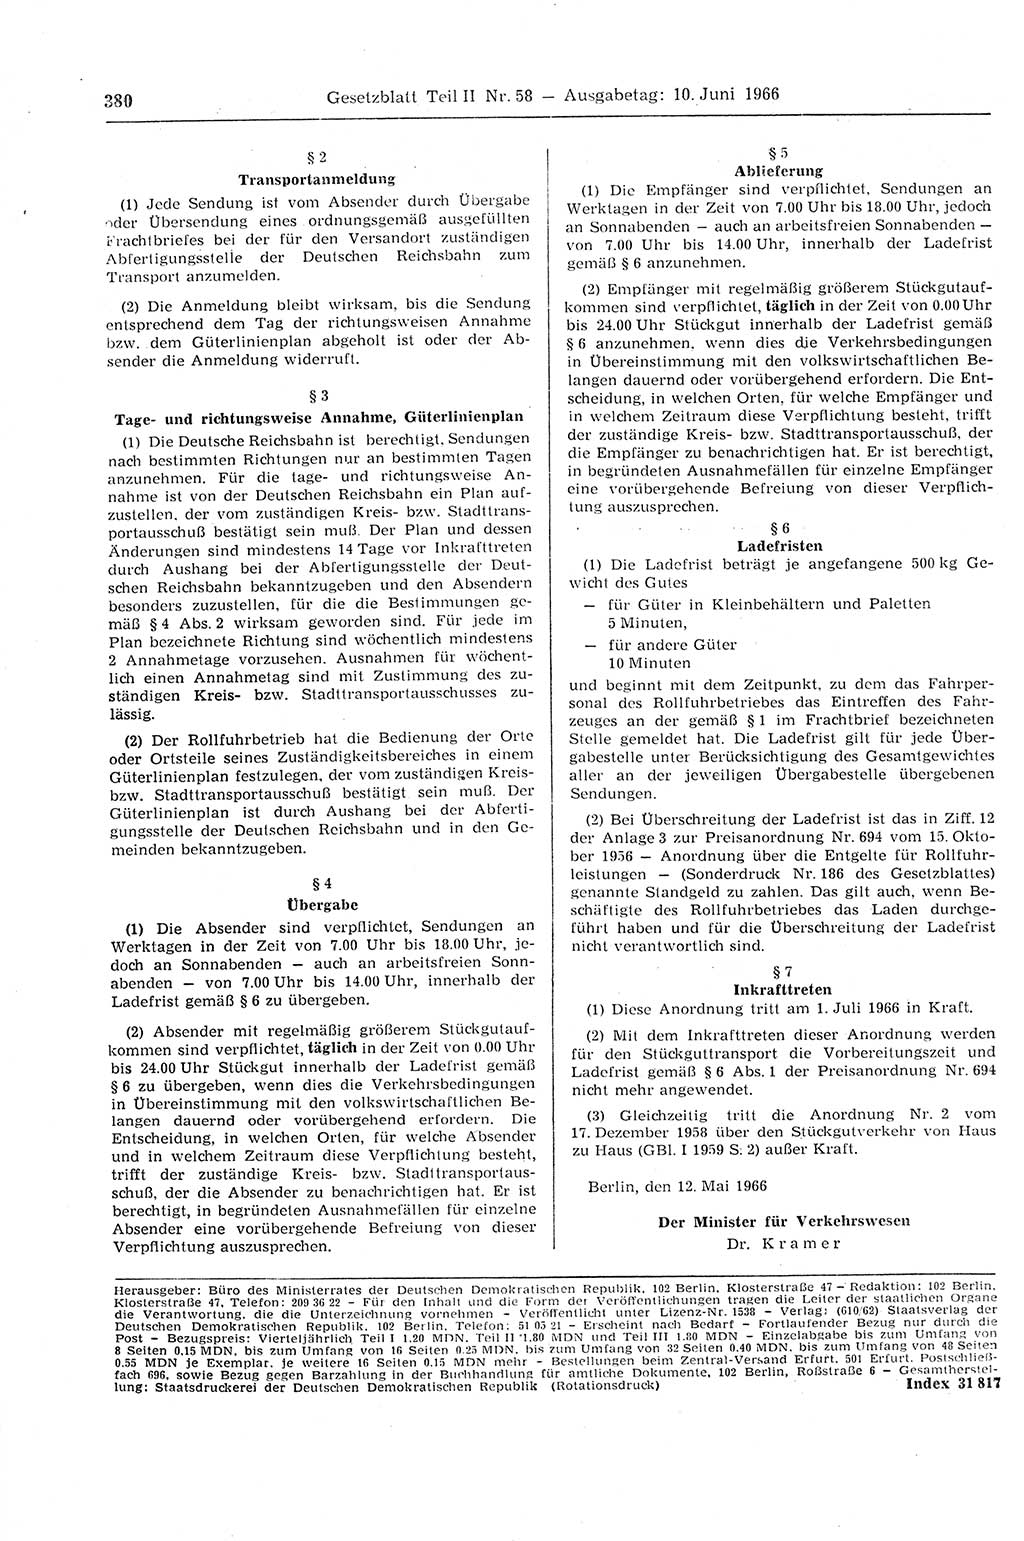 Gesetzblatt (GBl.) der Deutschen Demokratischen Republik (DDR) Teil ⅠⅠ 1966, Seite 380 (GBl. DDR ⅠⅠ 1966, S. 380)